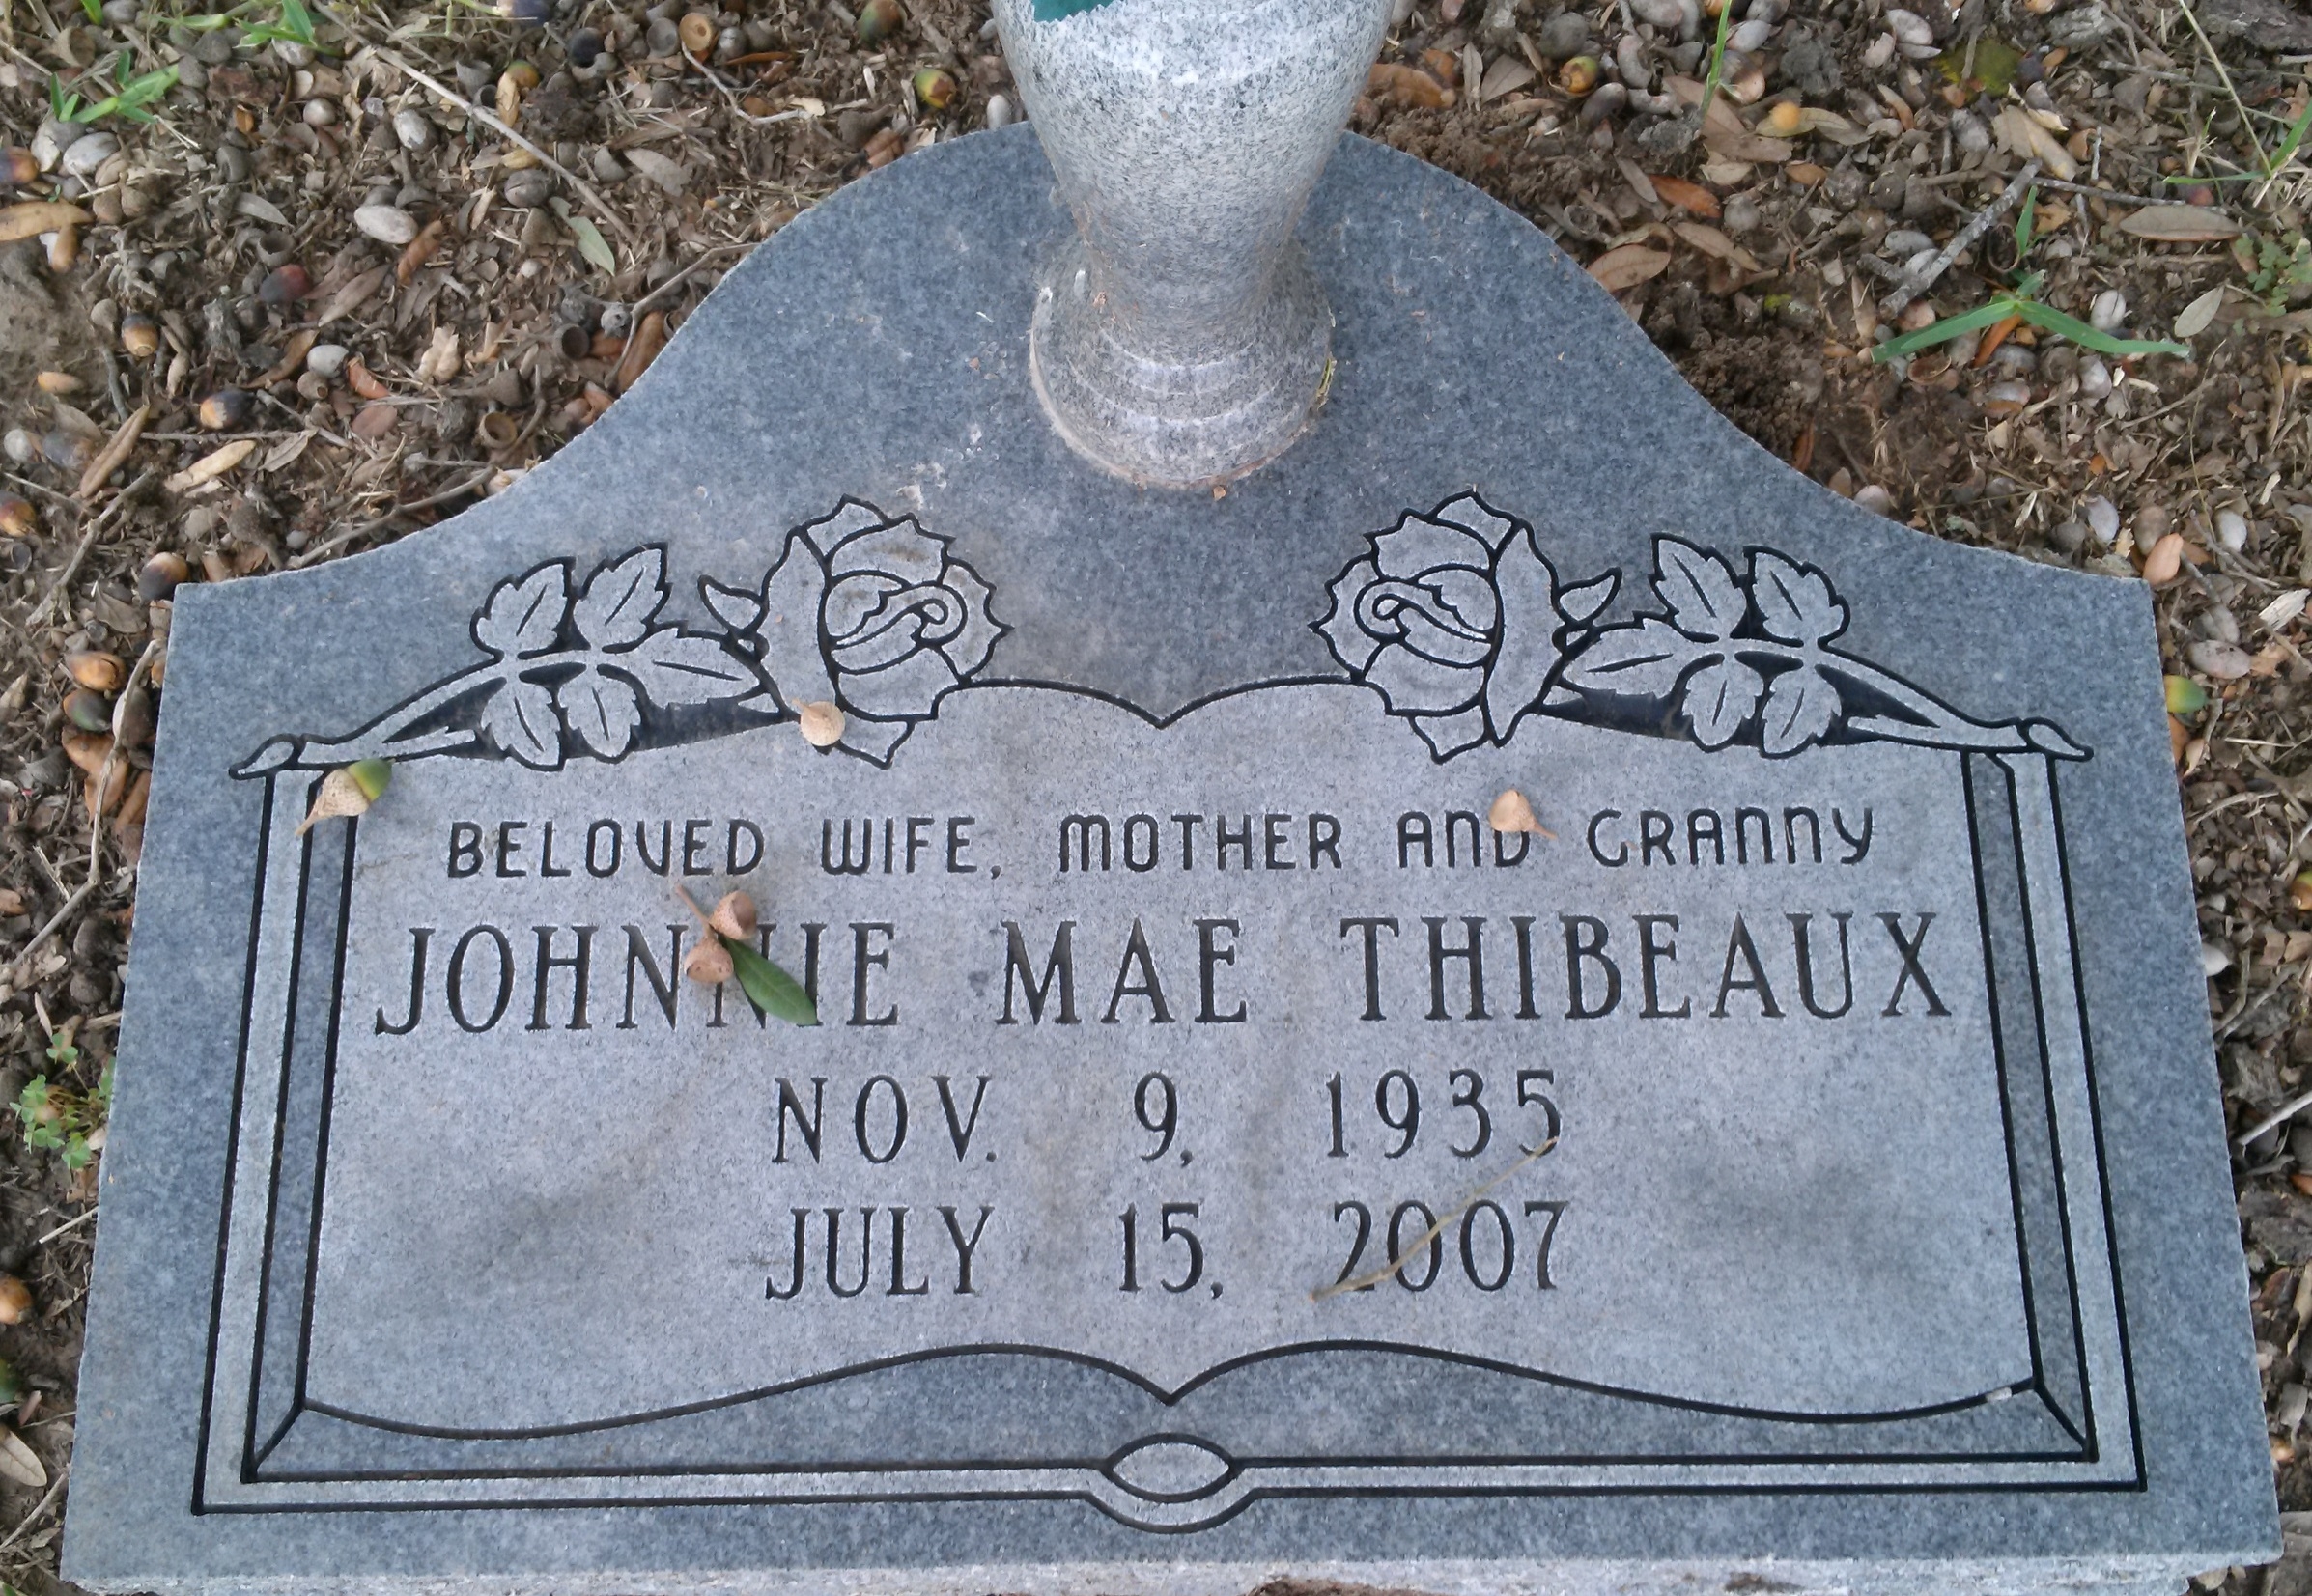 Johnnie MaeThibeaux gravesite